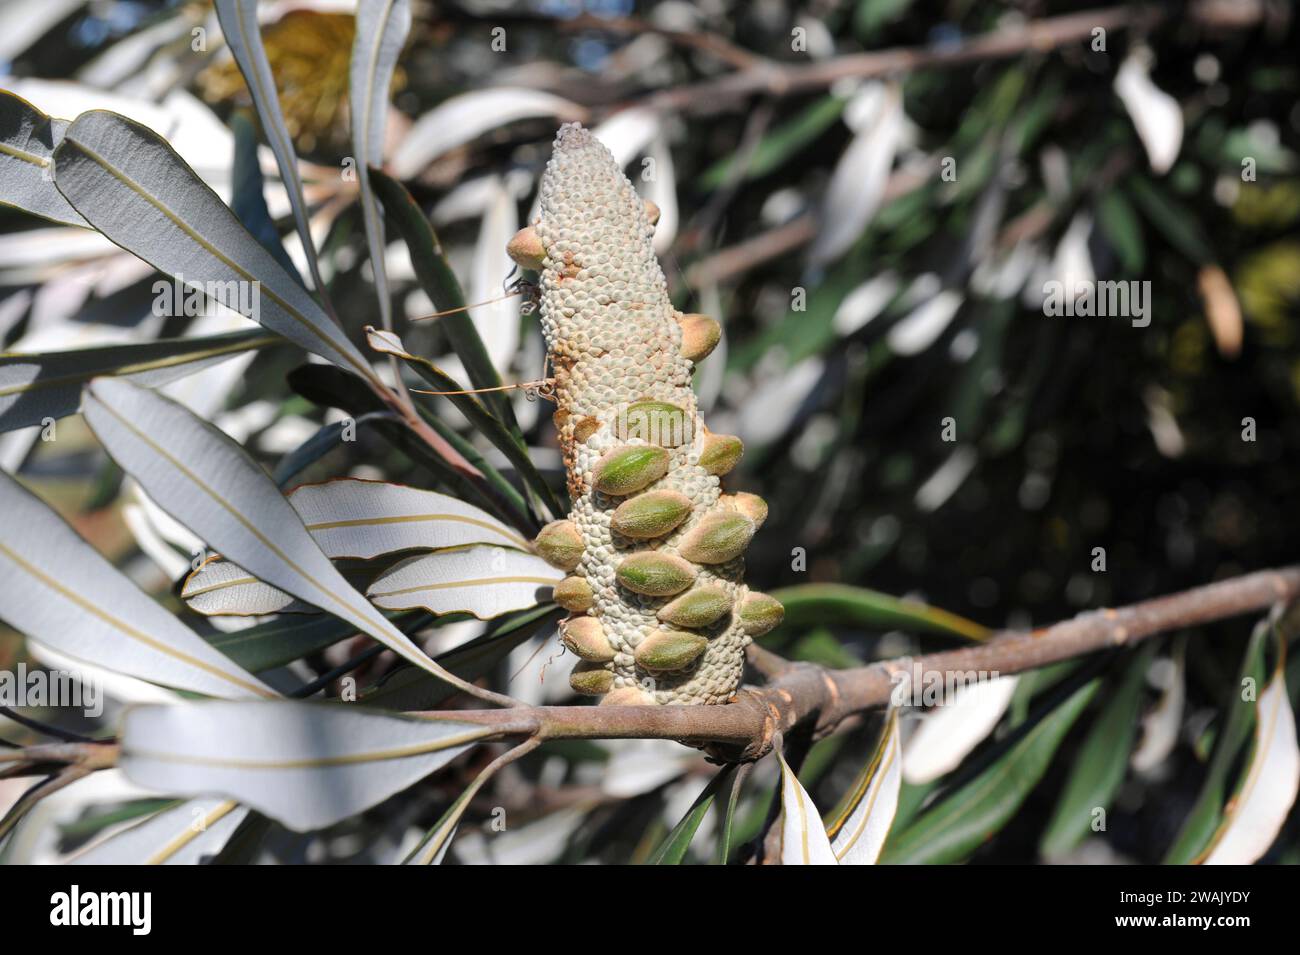 La banksia (Banksia intecgrifolia) è un arbusto sempreverde o un piccolo albero nativo delle coste orientali dell'Australia. Dettaglio Infrutescence. Foto Stock